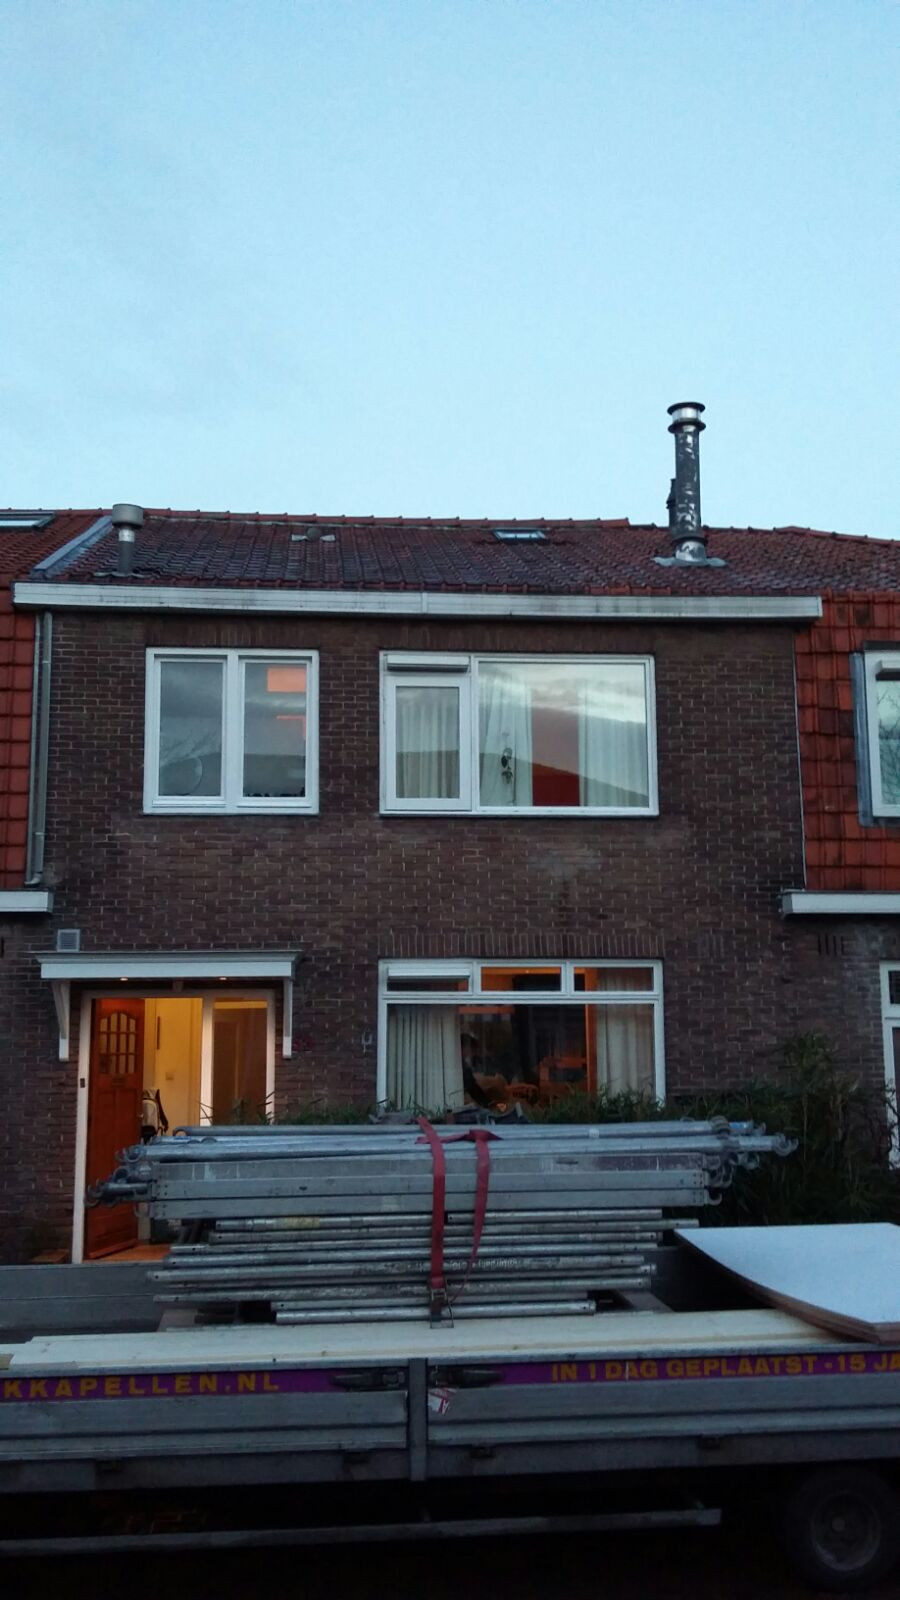 Woning Amstelveen zonder dakopbouw met een licht schuin/plat dak.